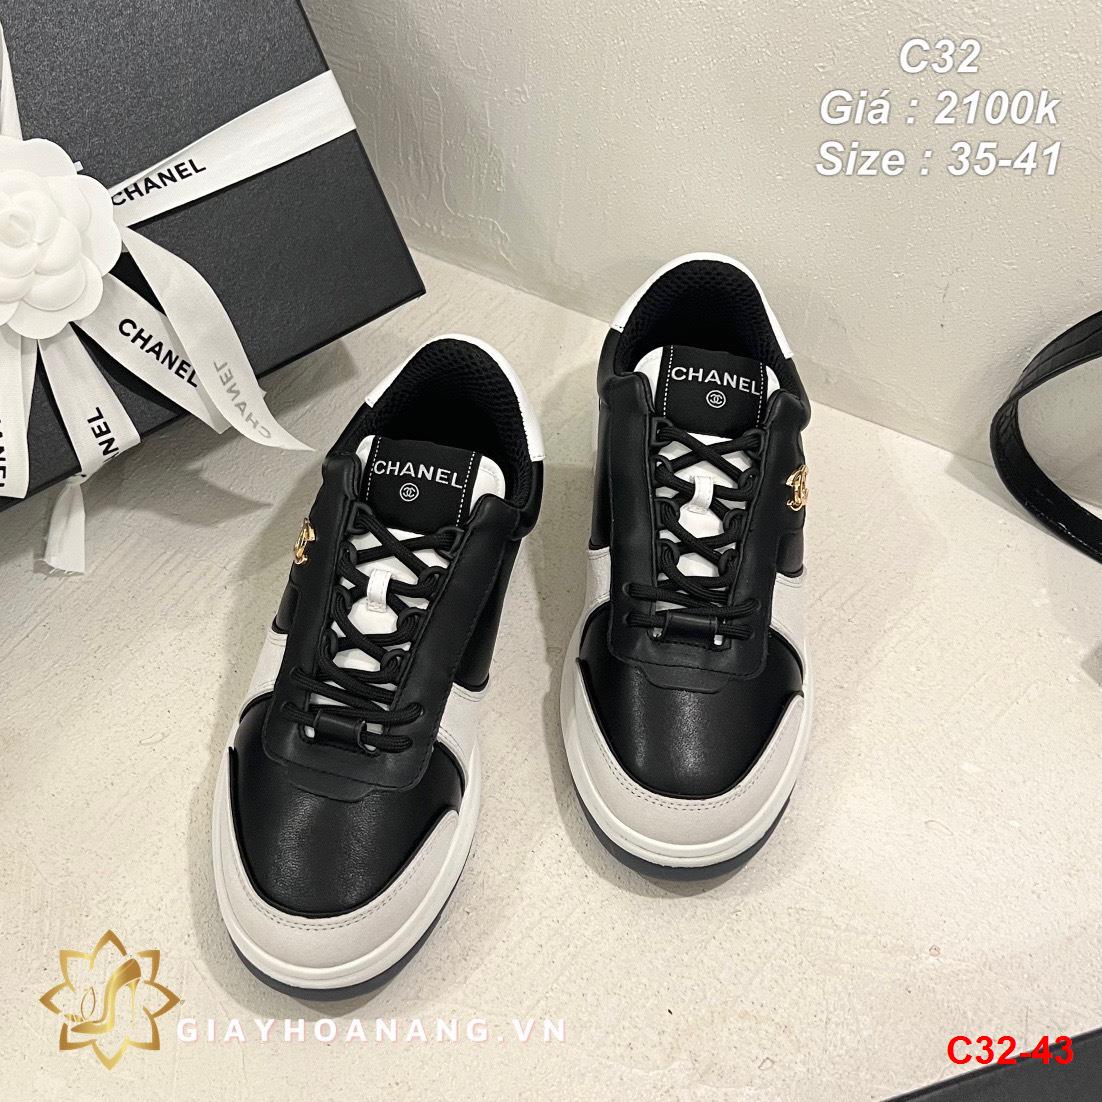 C32-43 Chanel giày thể thao siêu cấp